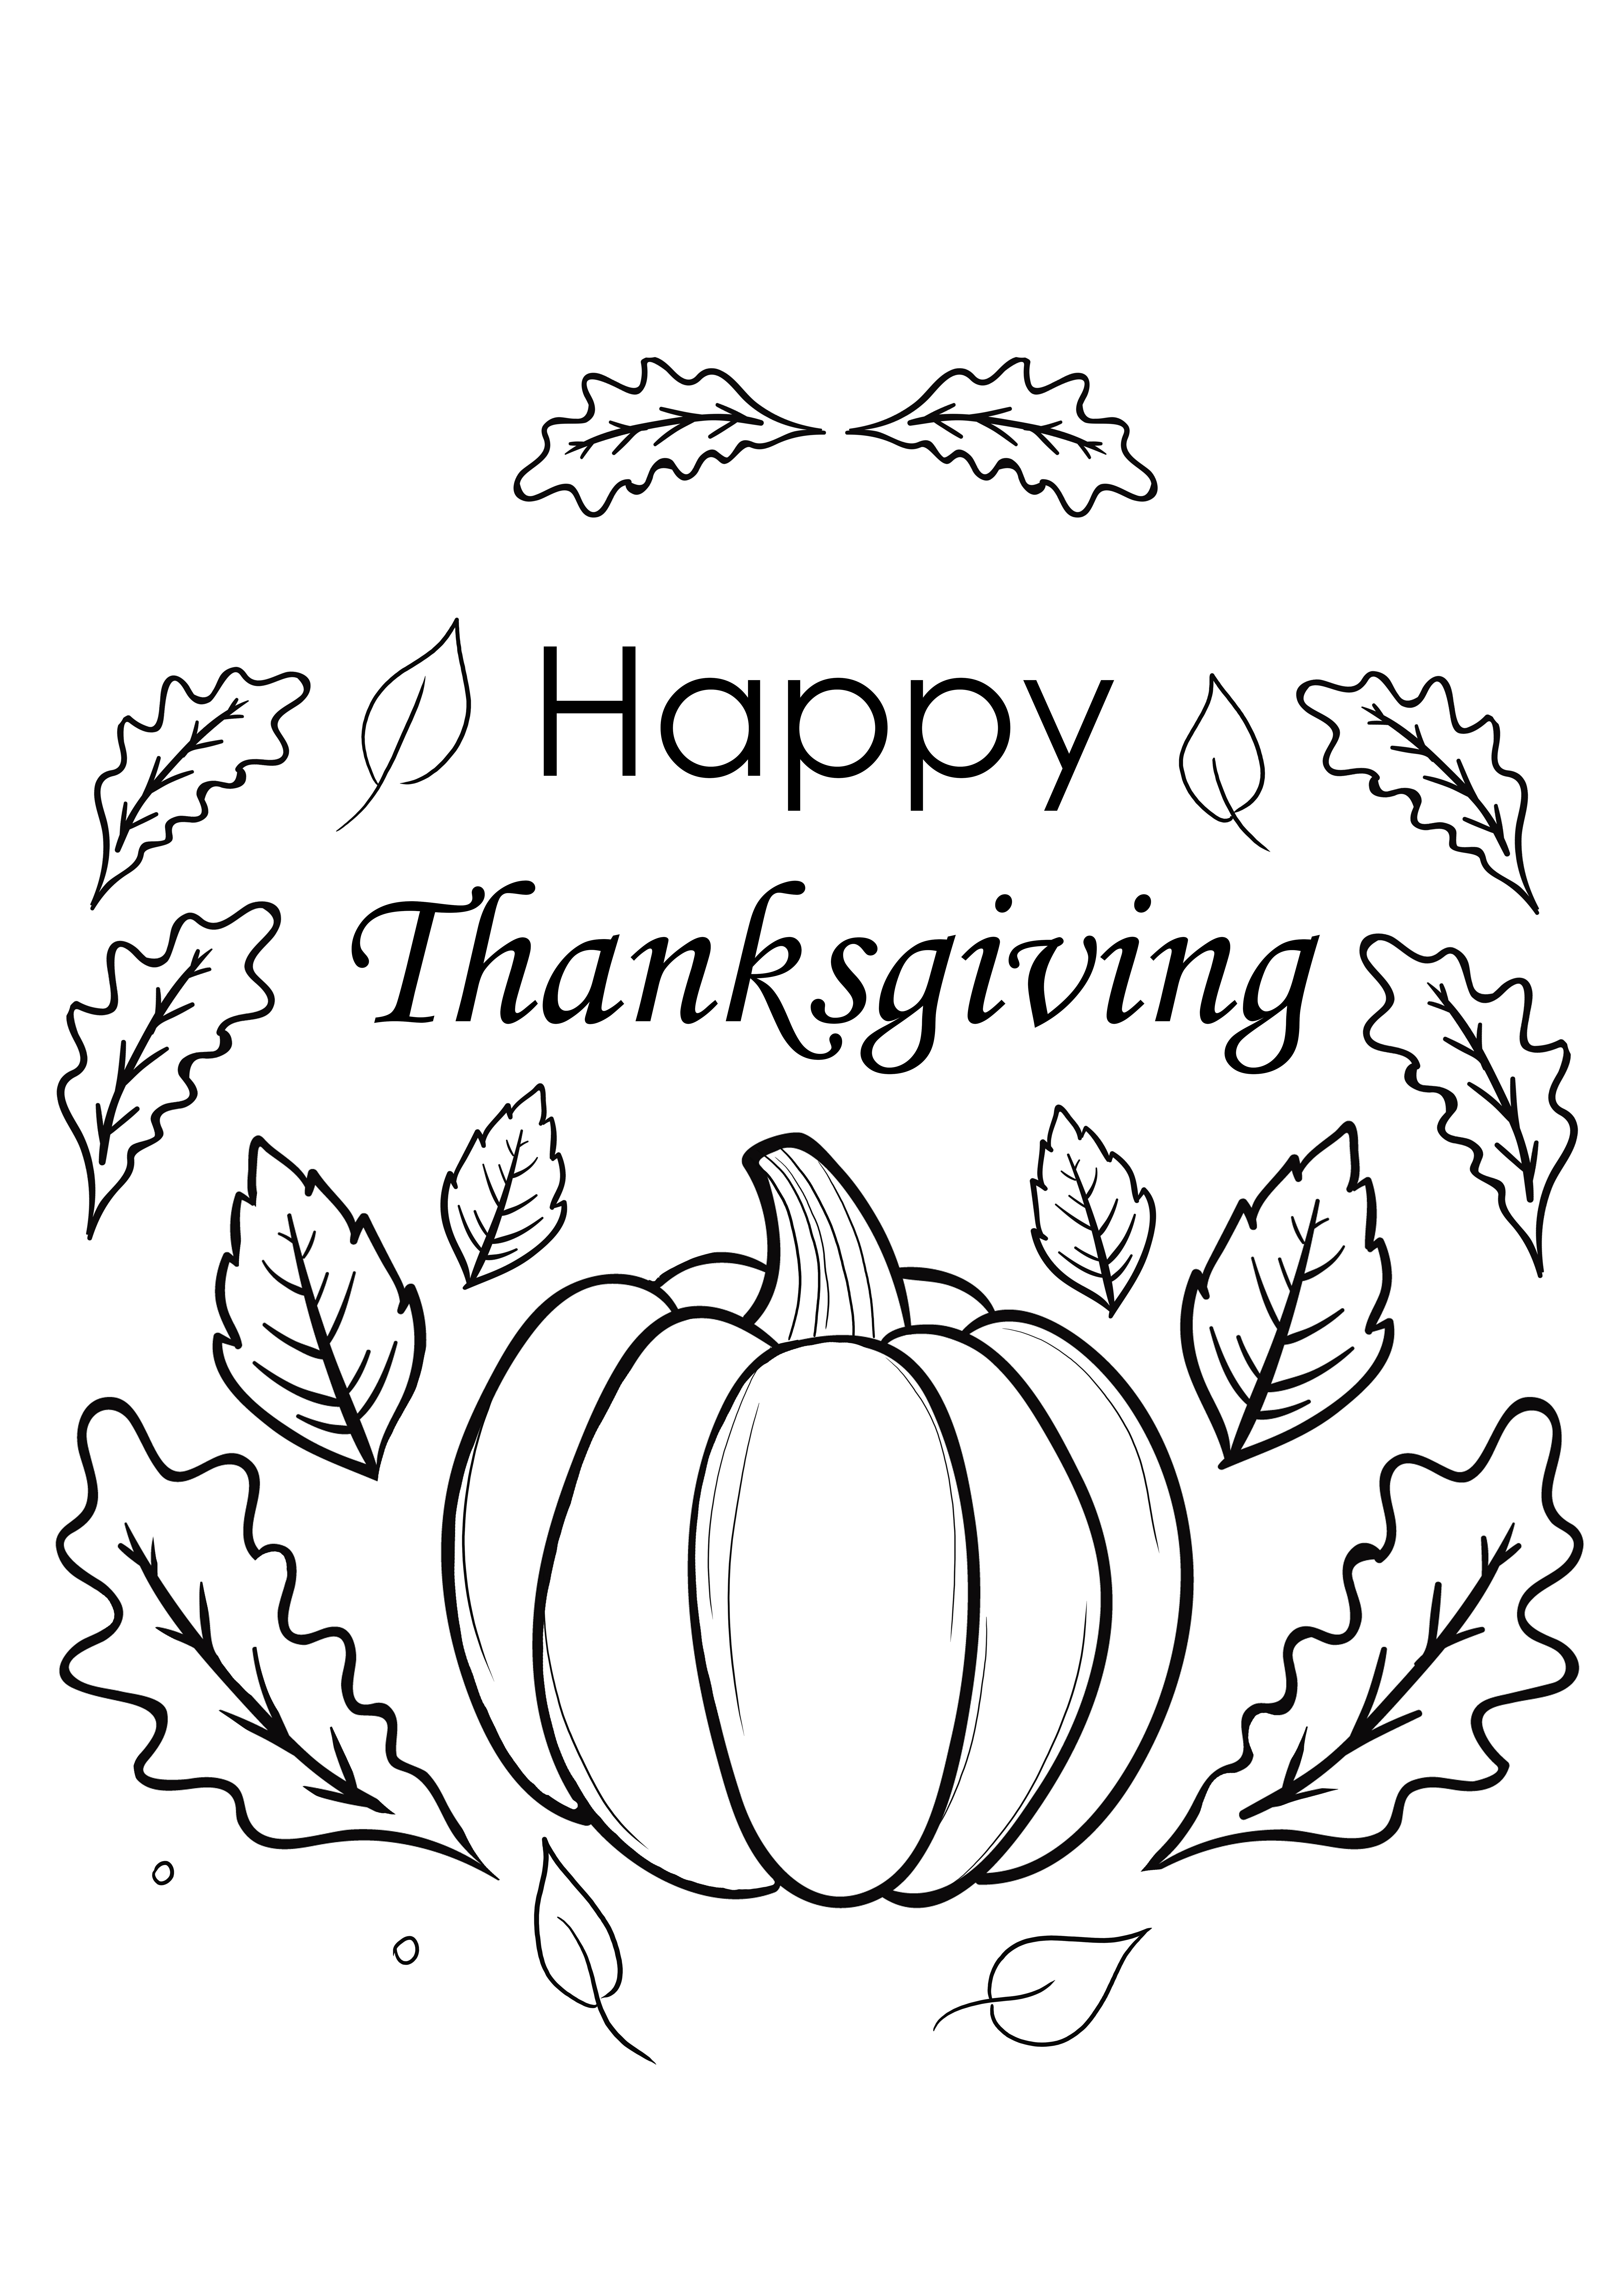 Carta Happy Thanksgiving da scaricare per i bambini da colorare gratuitamente